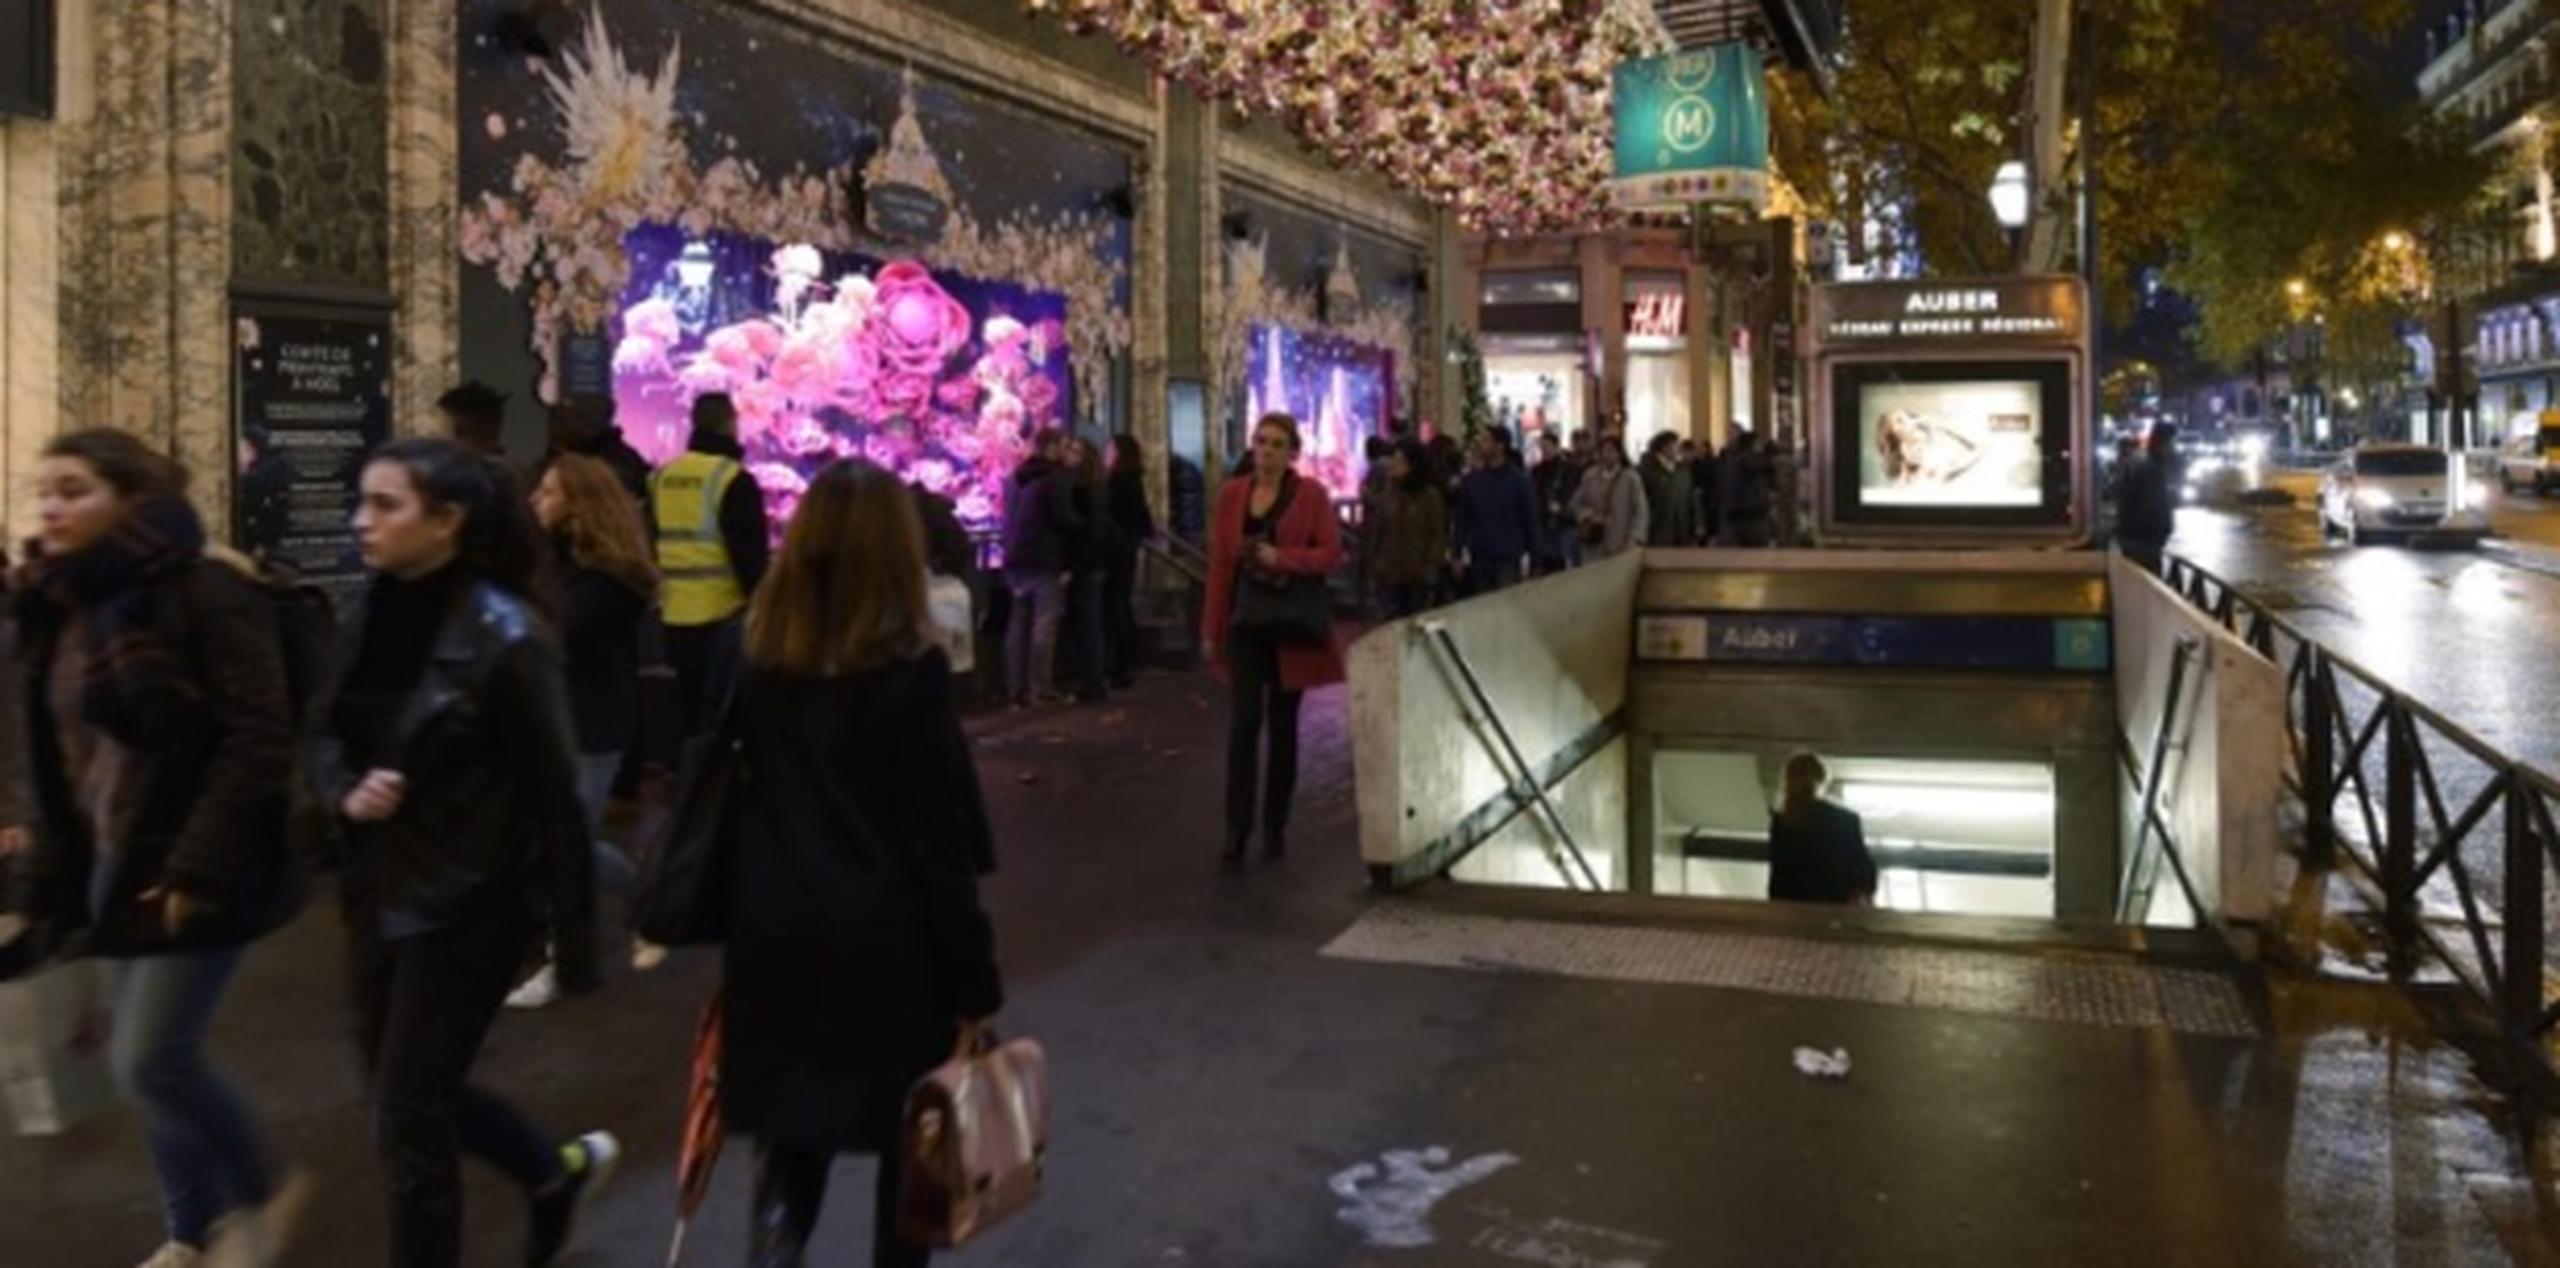 Personas caminan en área de tiendas en París. (AFP)